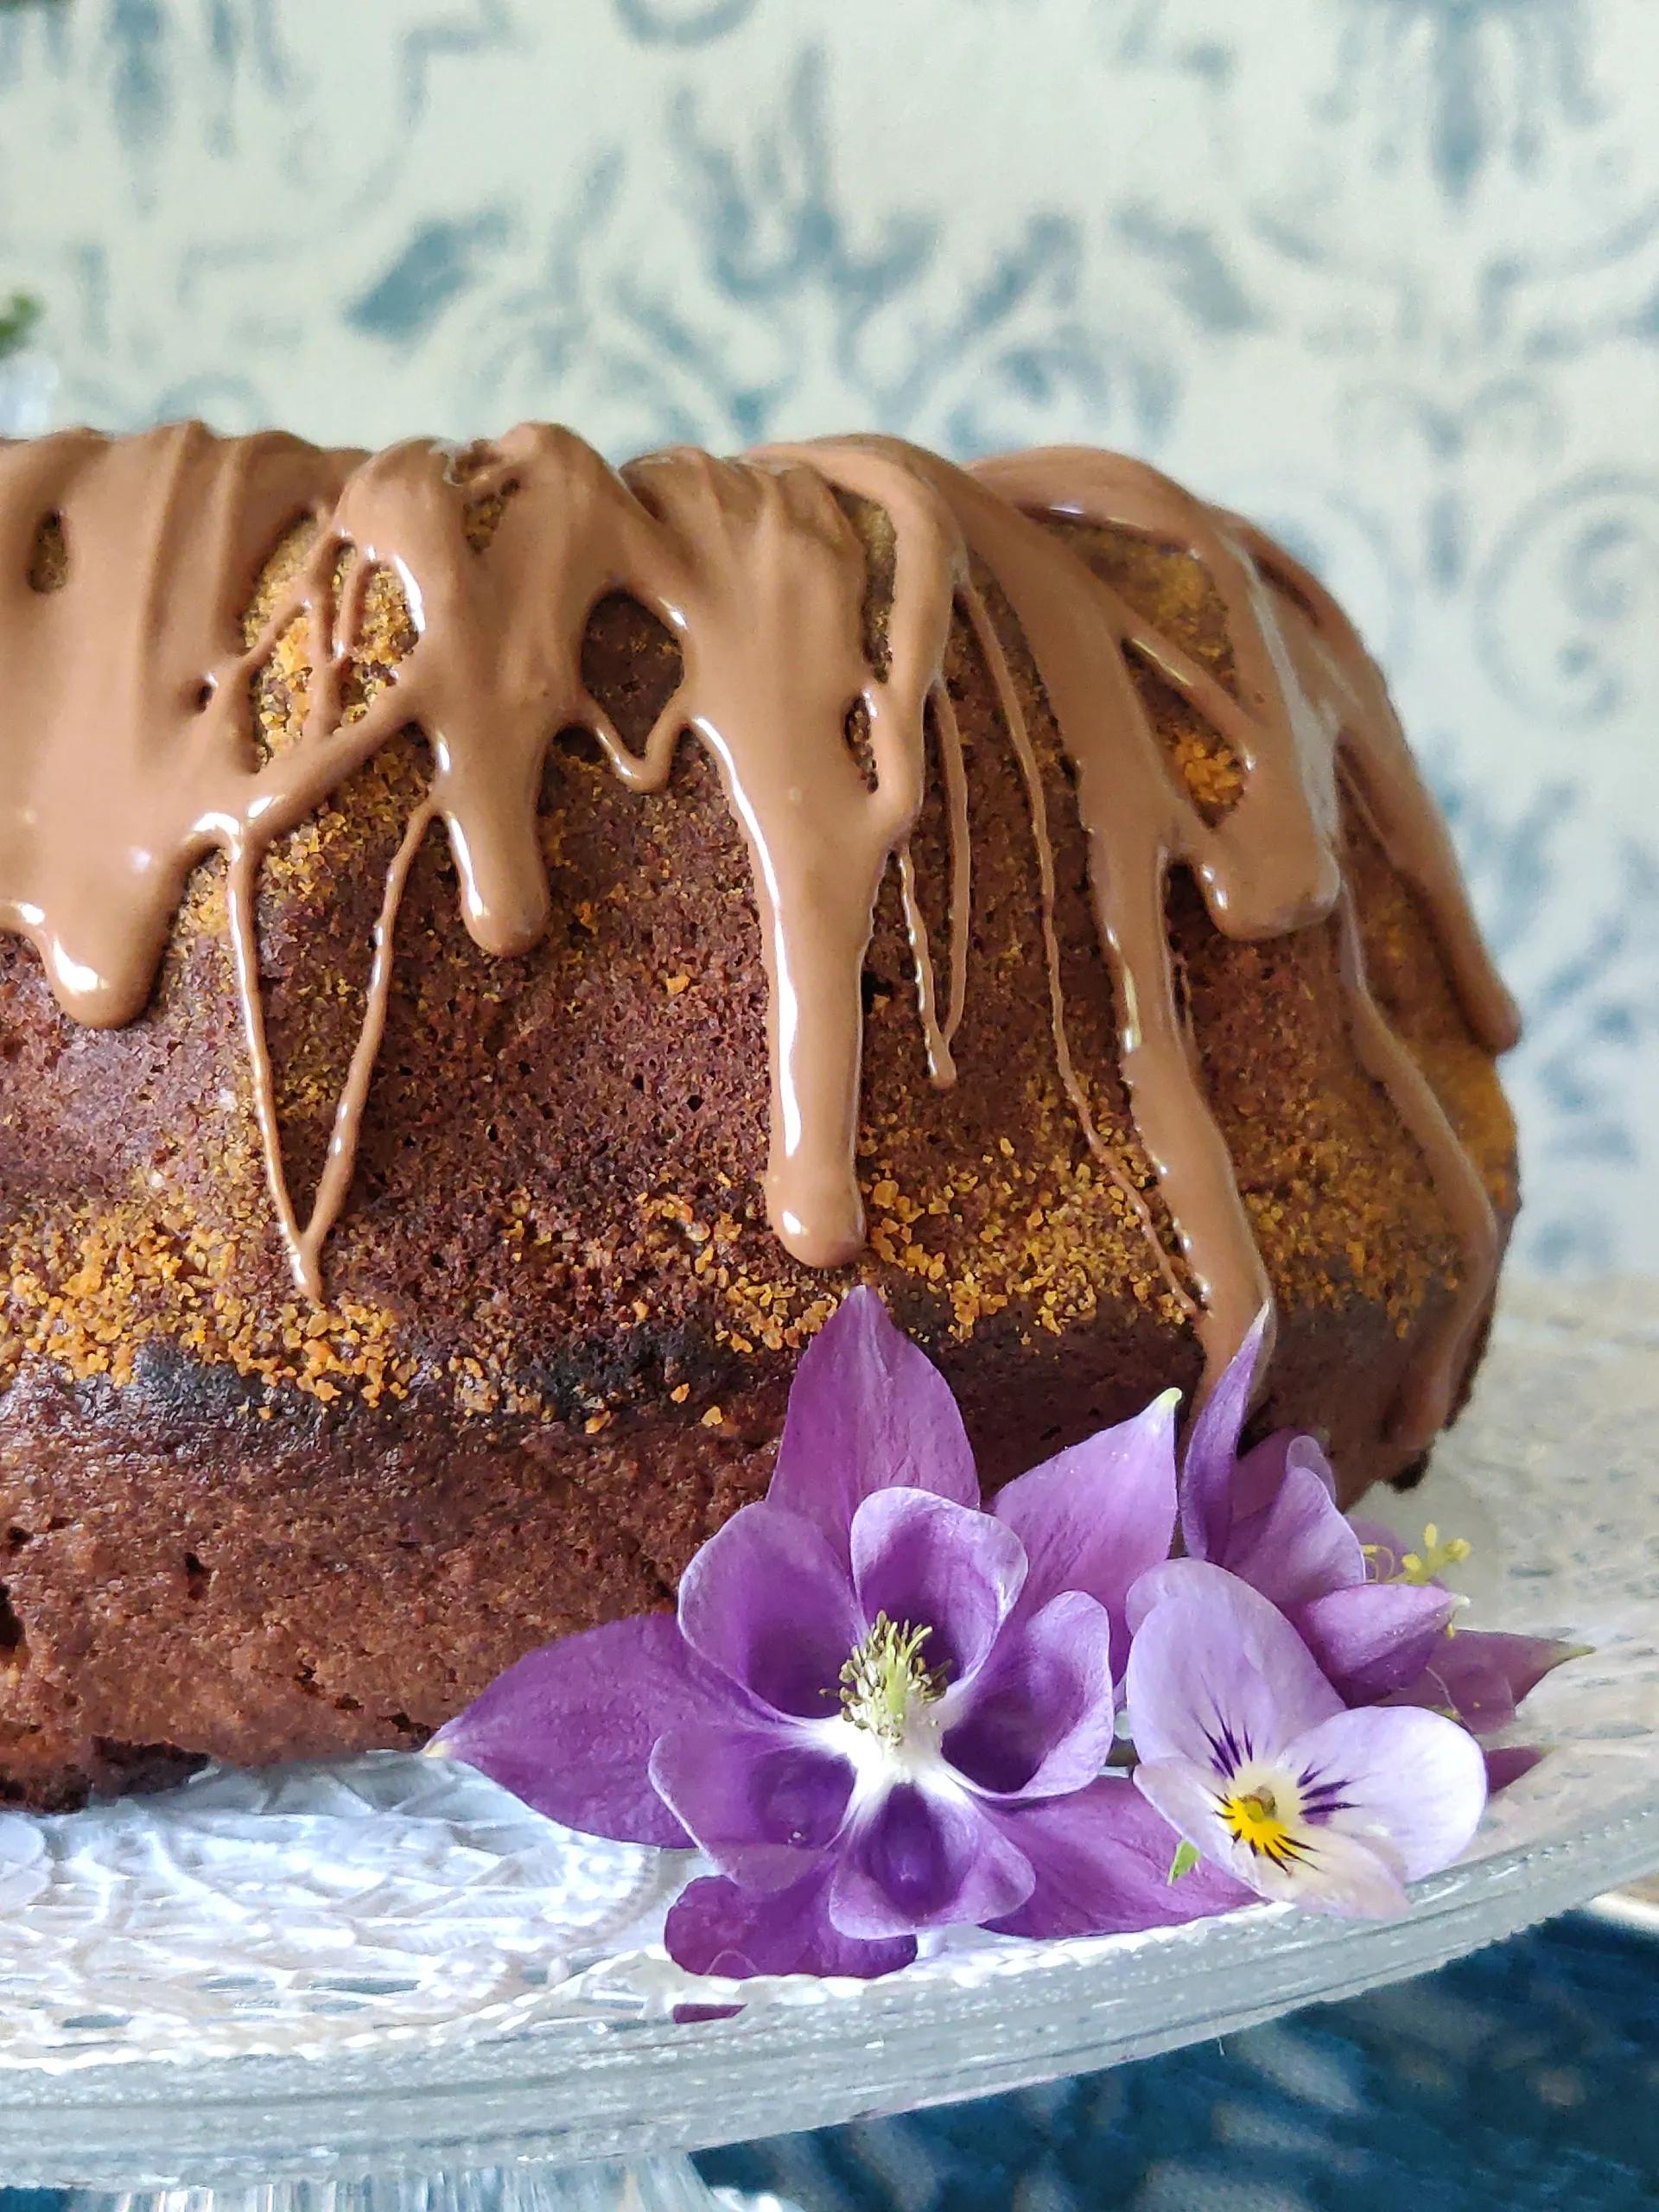 Feiner Schokoladenkuchen - Die Bakerey - Backen wie bei Oma